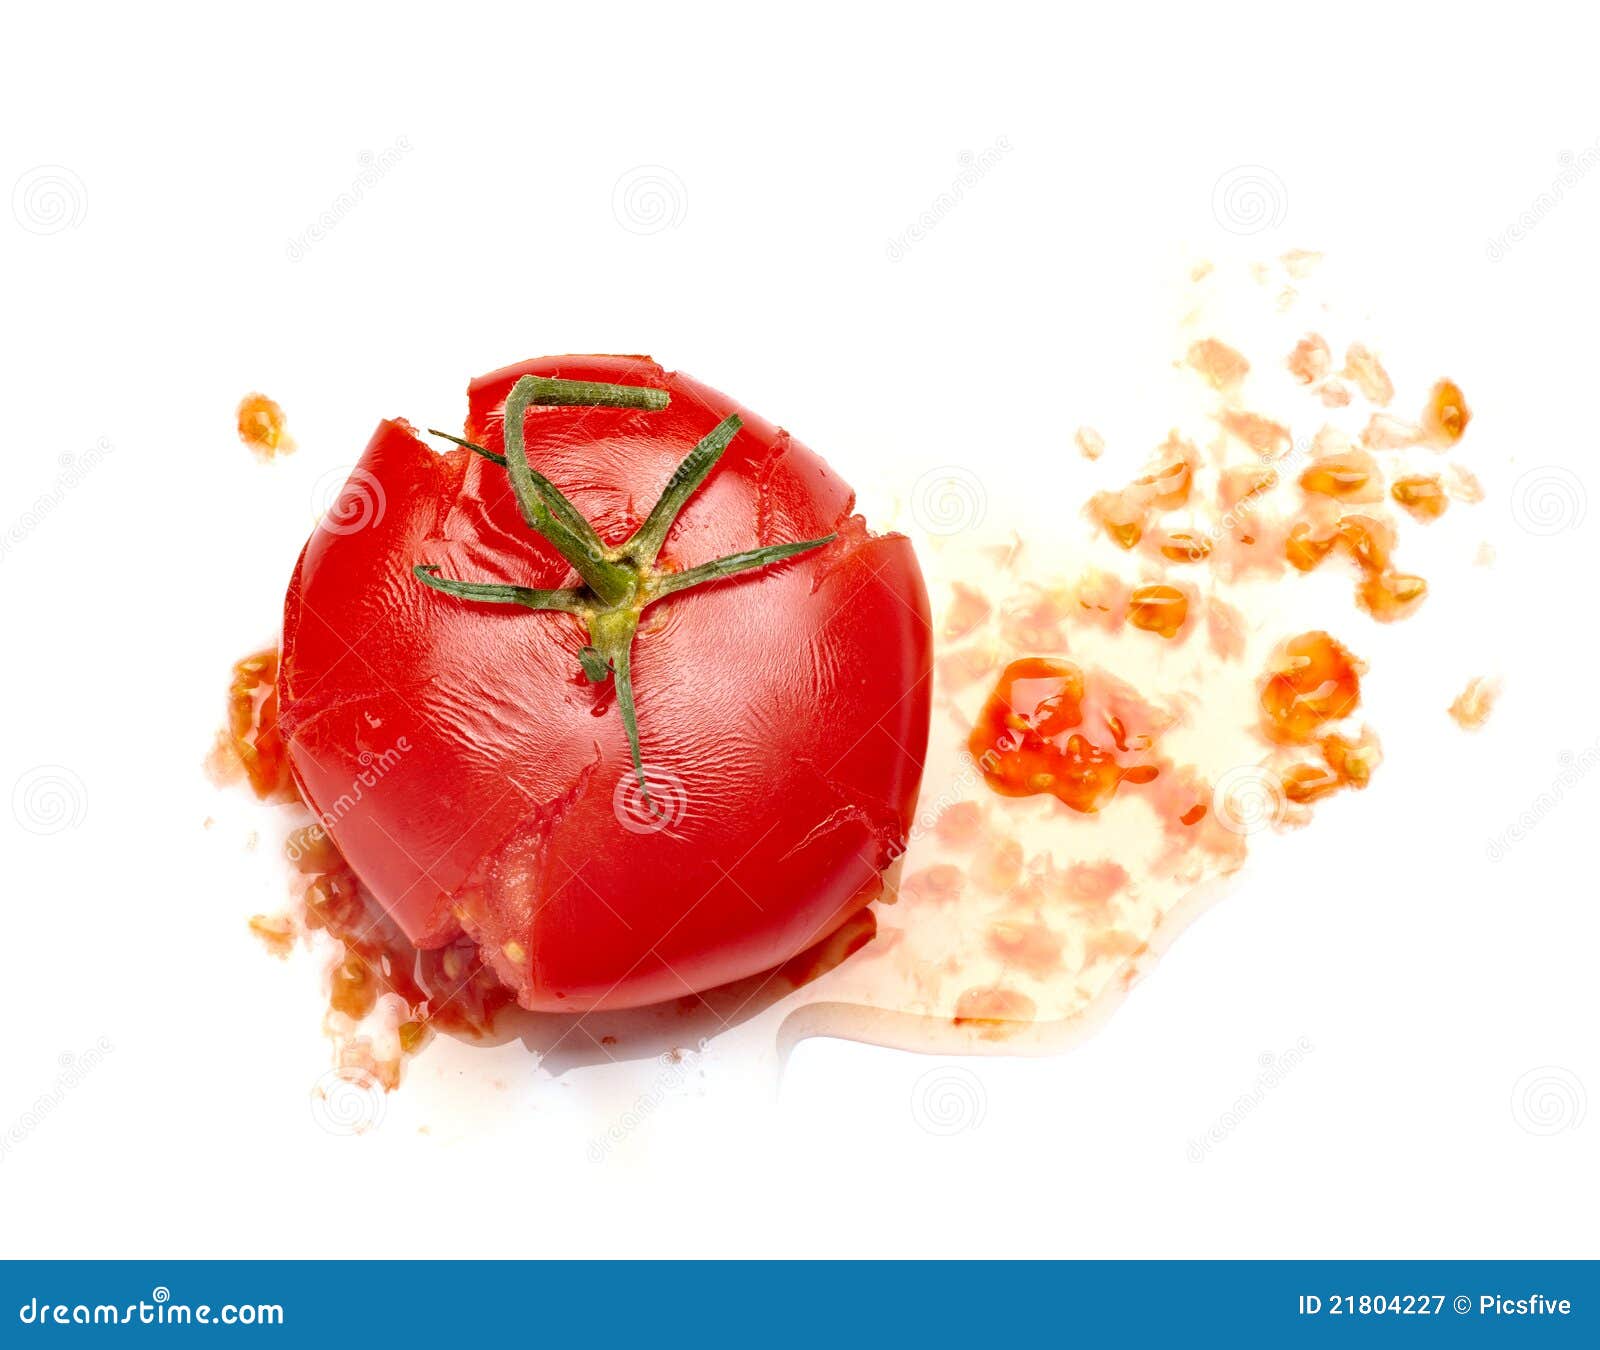 splattered tomato